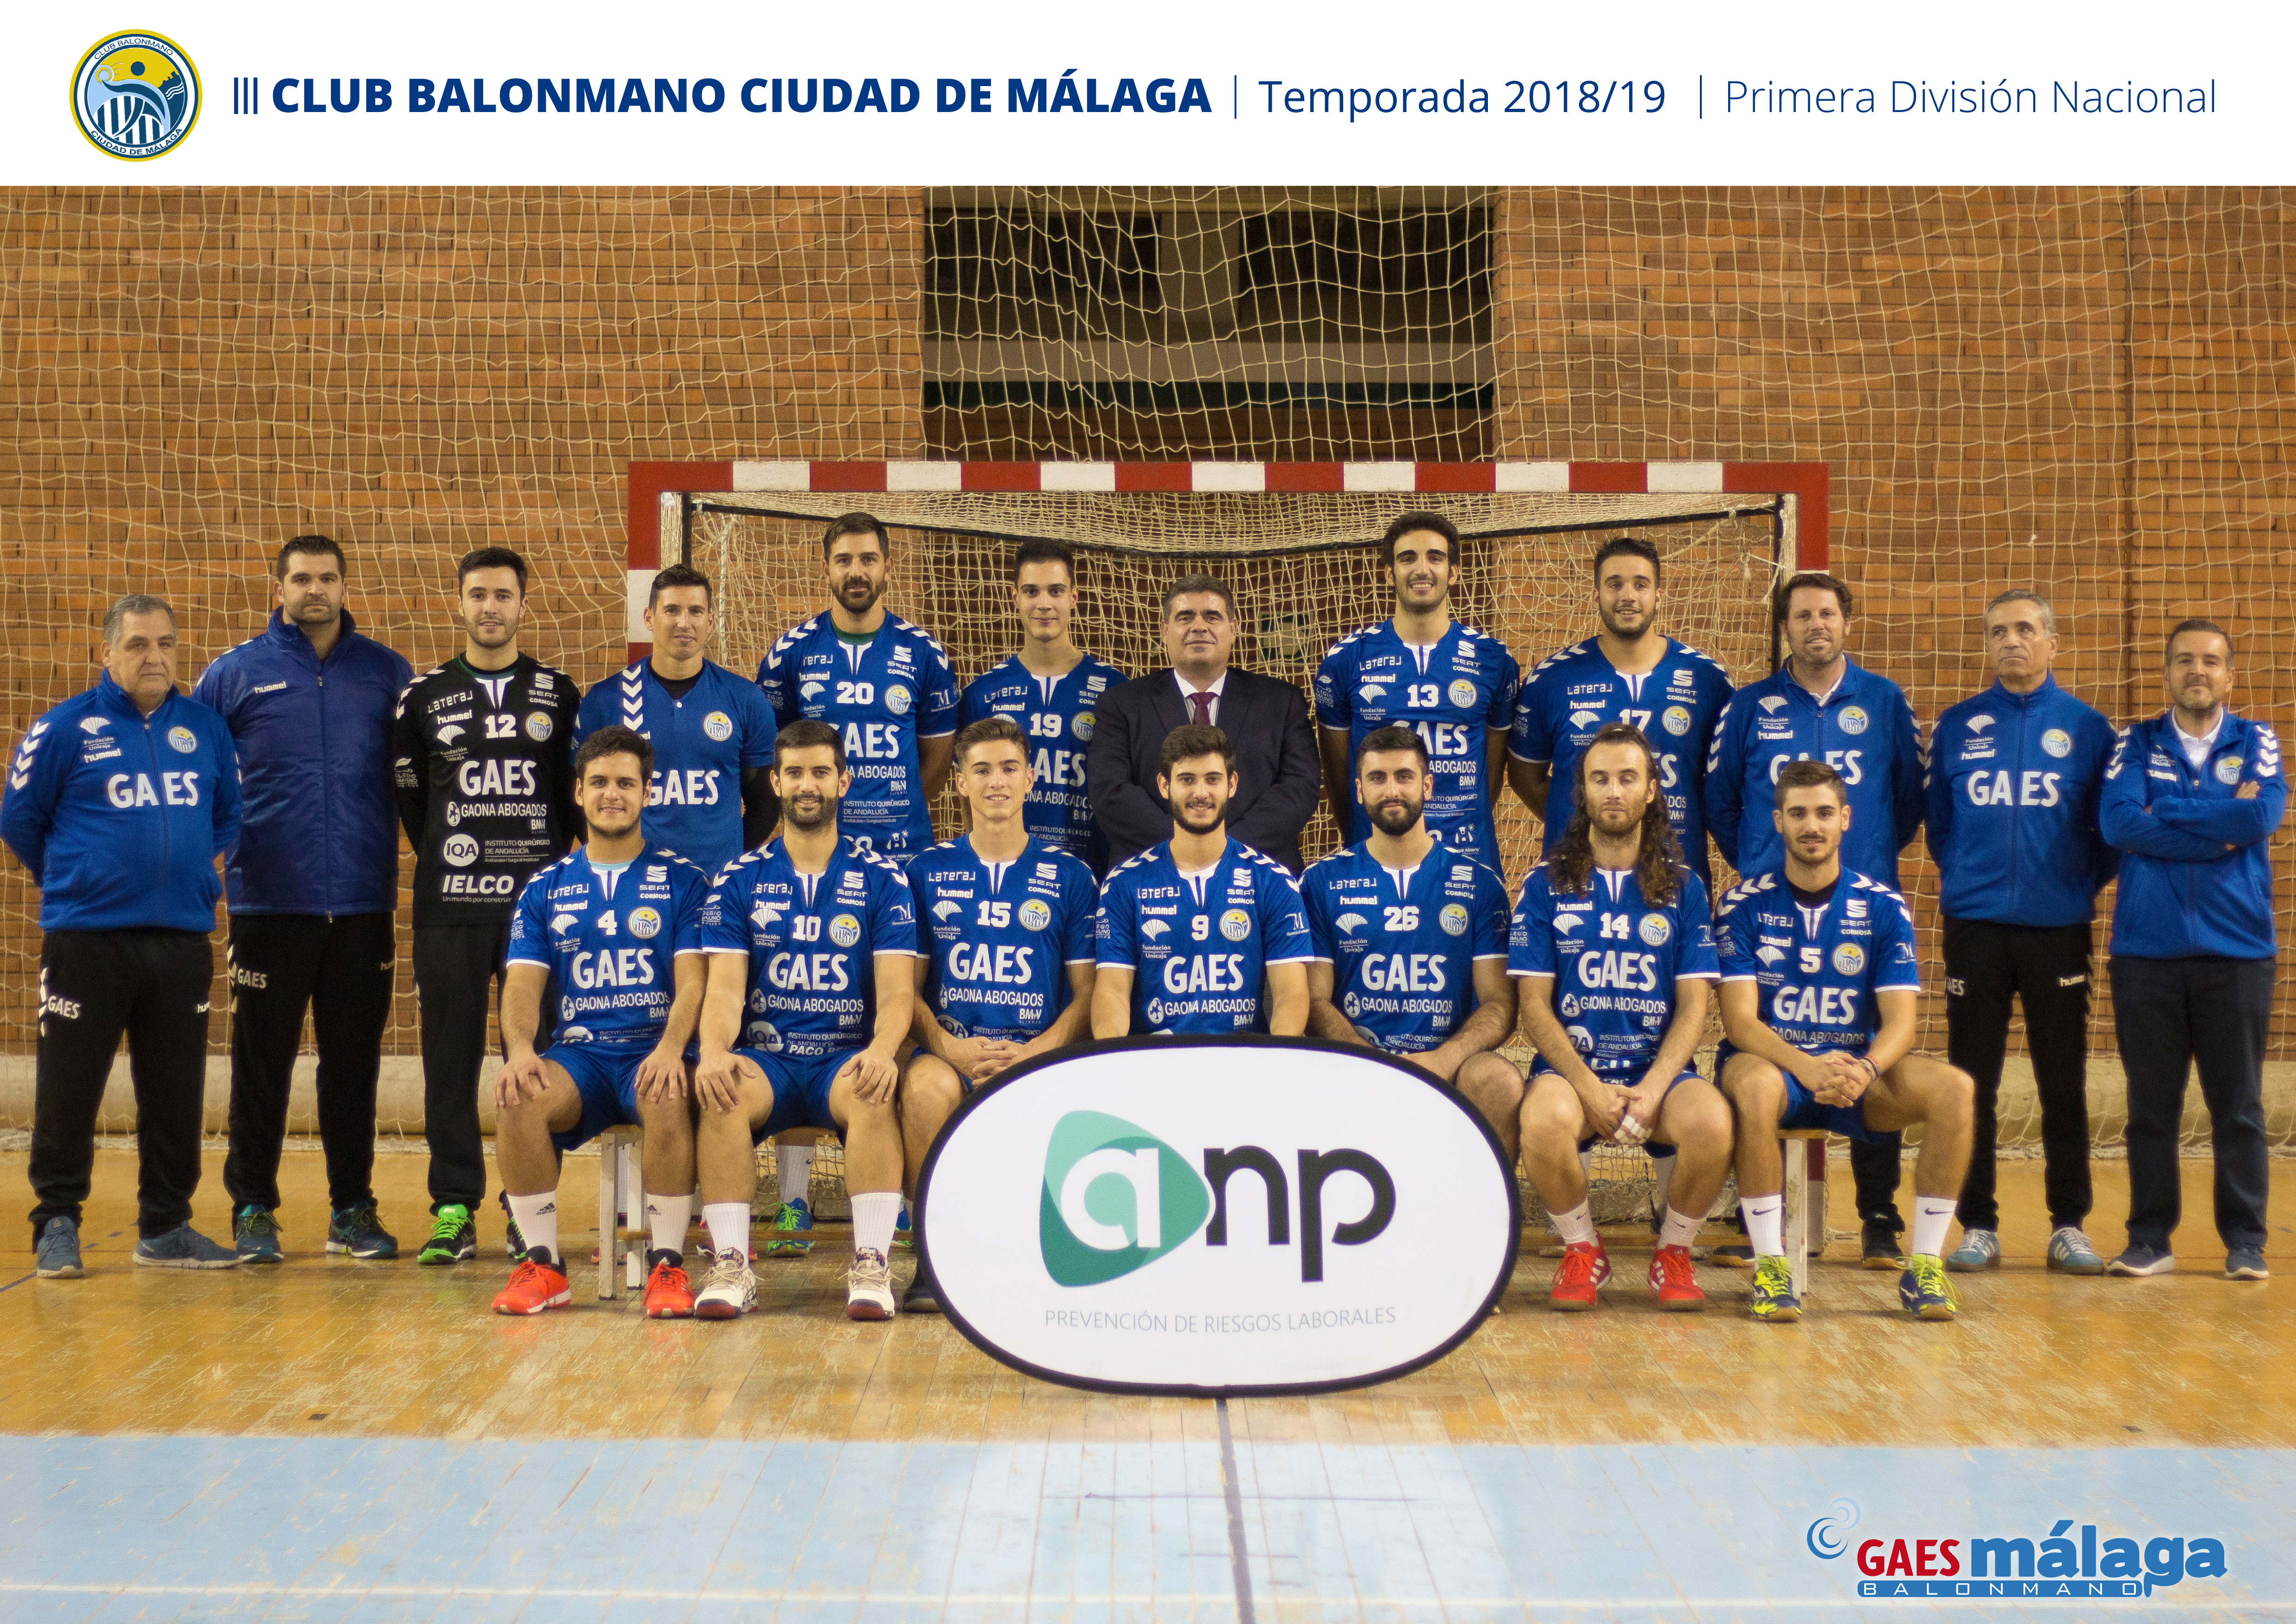 Grupo-ANP-patrocinador-del-Balonmano-Ciudad-de-Málaga